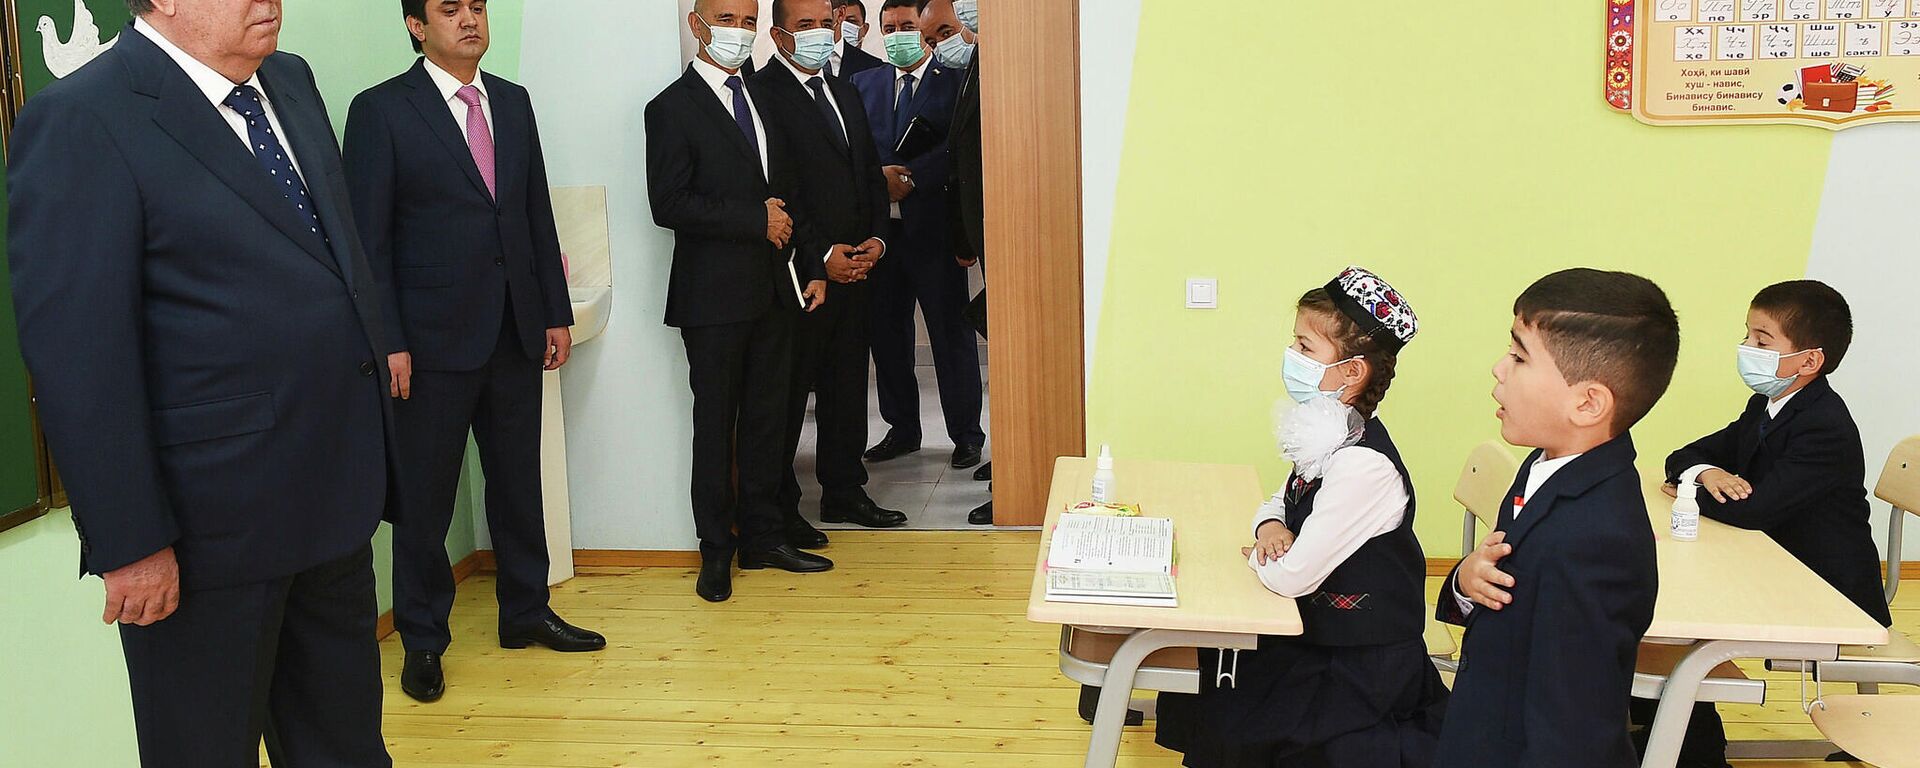 Эмомали Рахмон посетил учеников новой школы в Душанбе - Sputnik Таджикистан, 1920, 01.09.2021